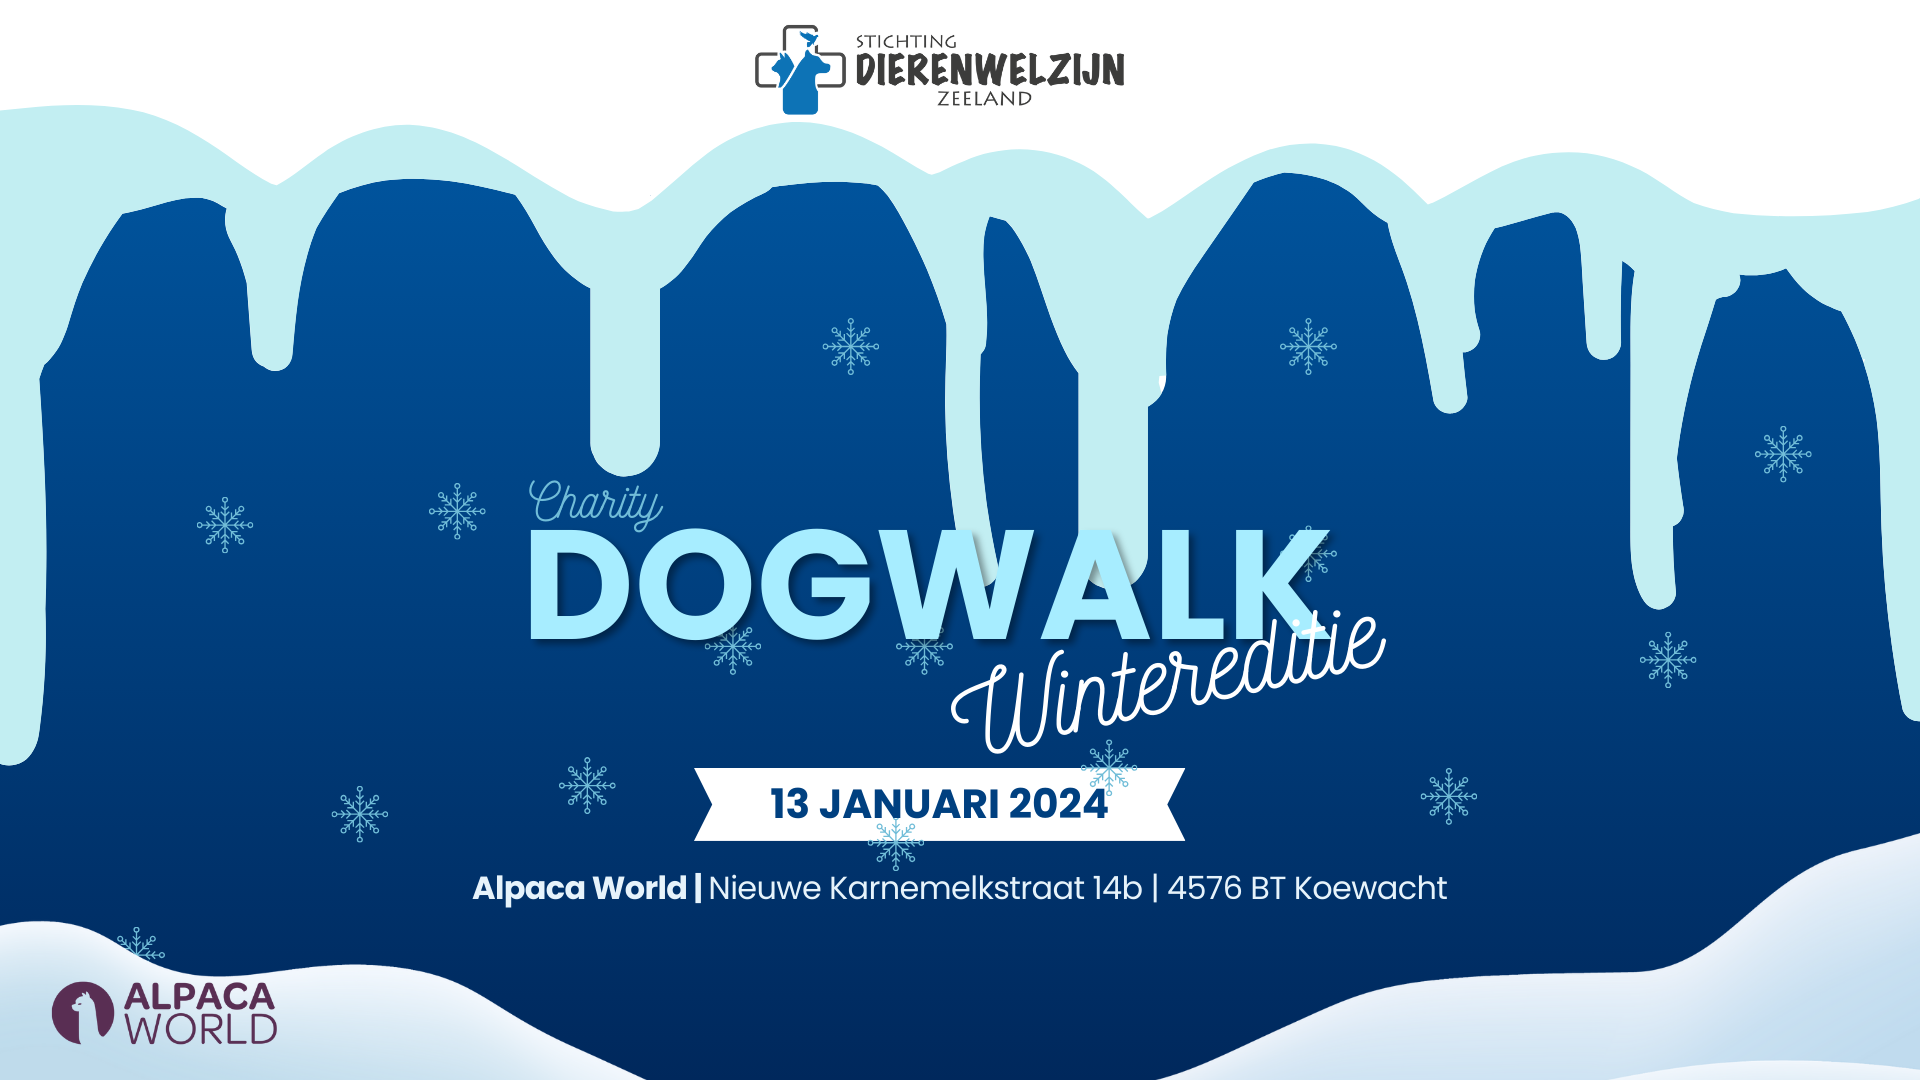 Dogwalk 2024 (wintereditie) Dierenwelzijn Walcheren (Mogelijk gemaakt